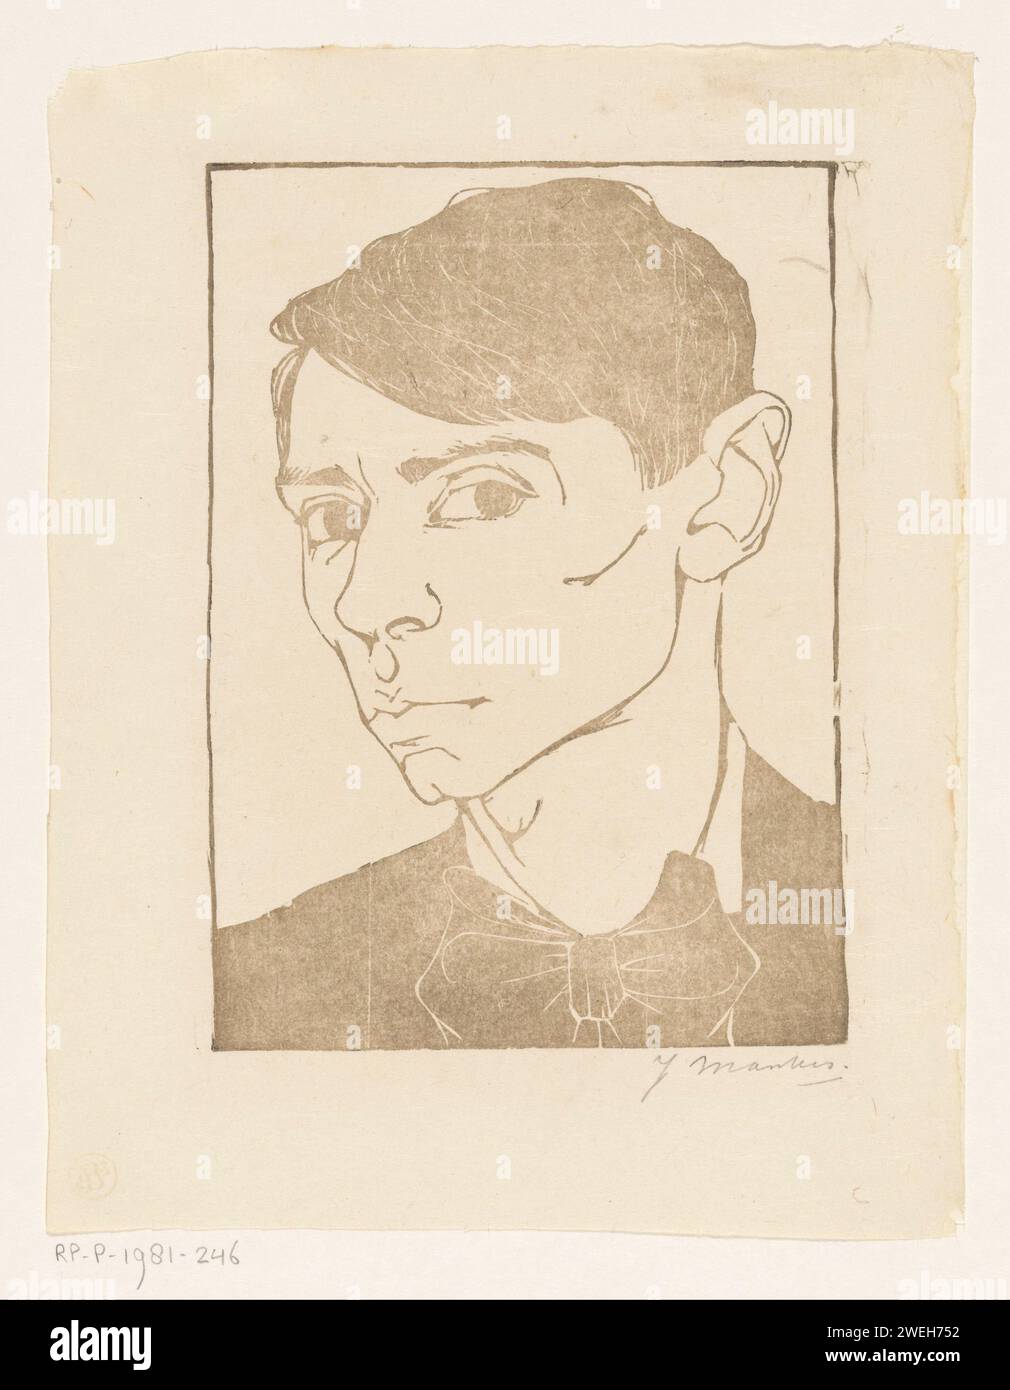 Autoritratto con Vlinderdas, Jan Mankes, ritratto su carta stampato 1913, autoritratto dell'artista. Attrezzatura da collo  abbigliamento (con NOME) Foto Stock